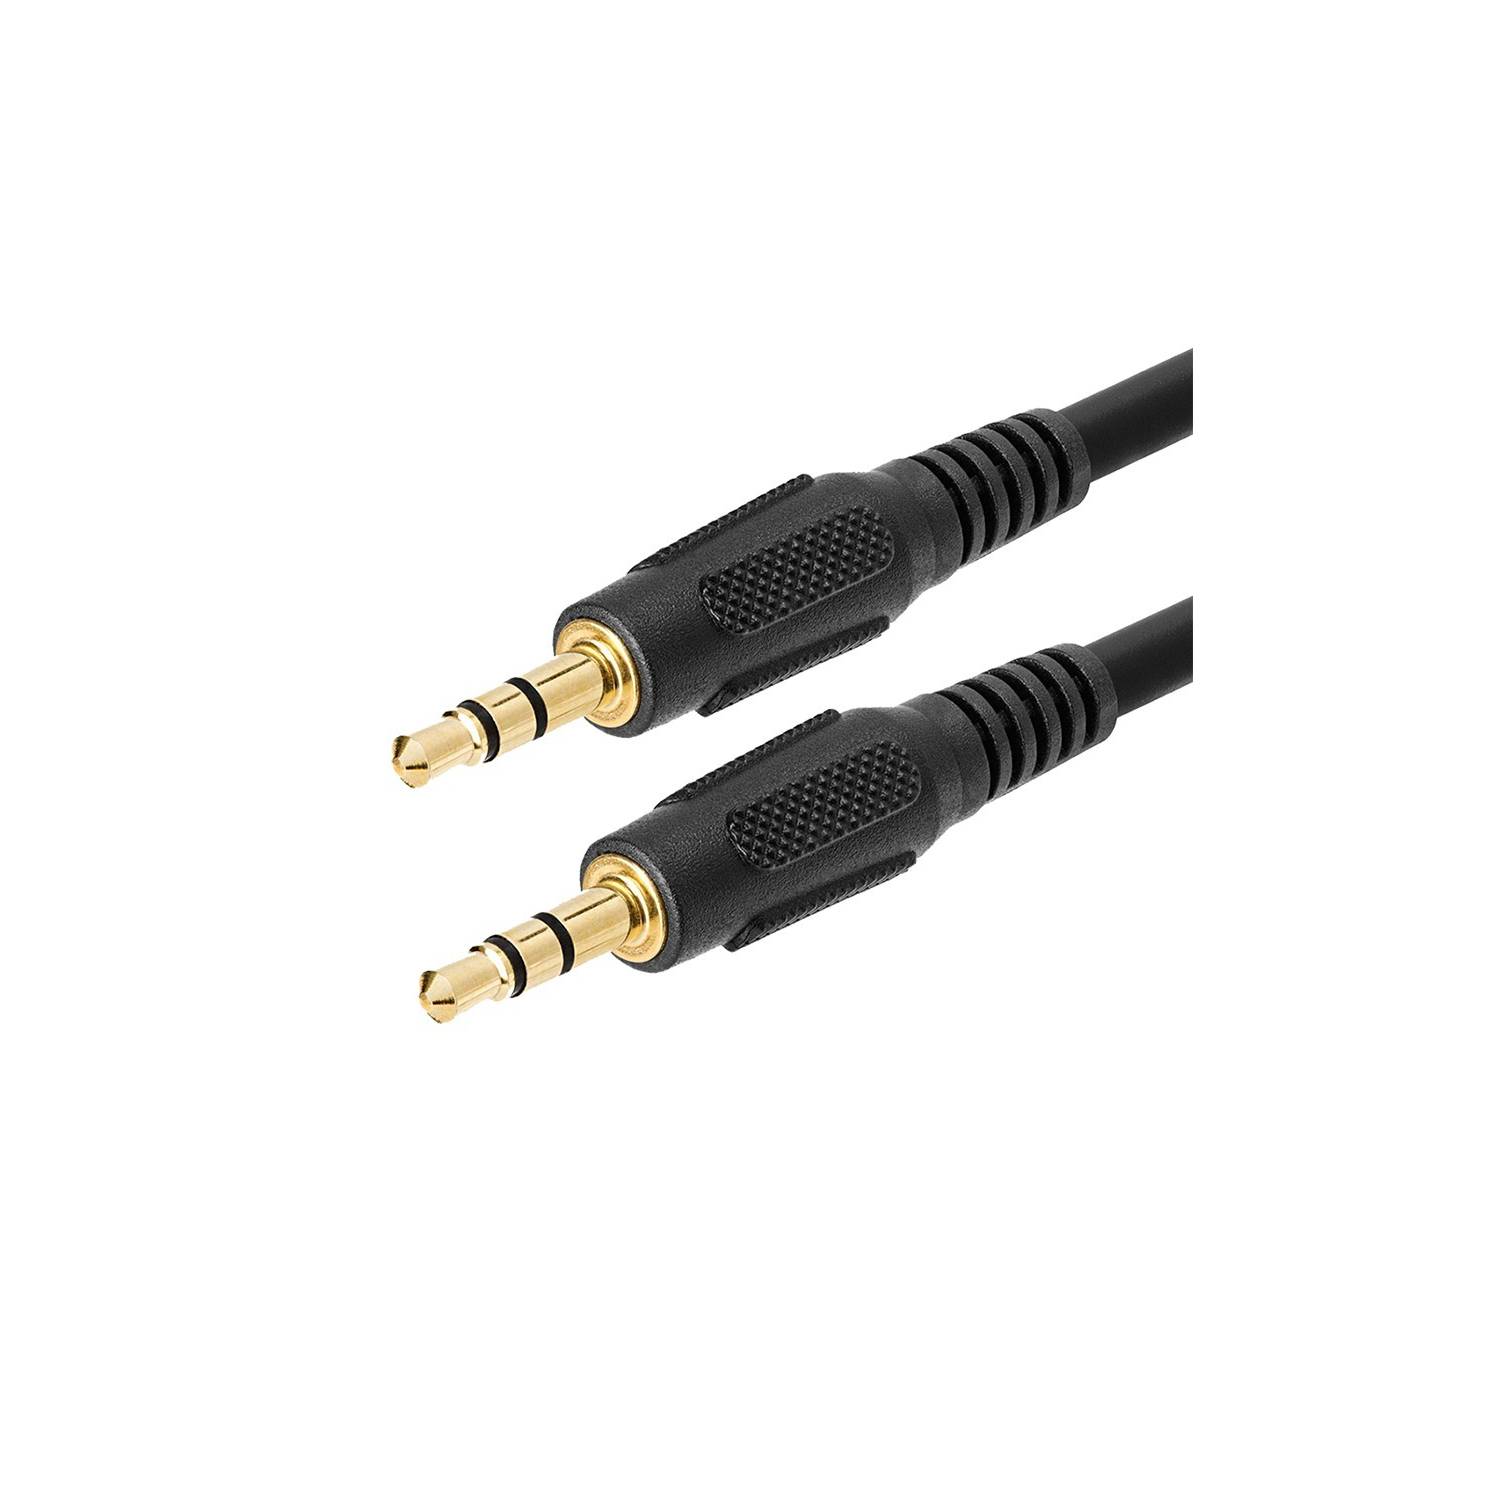 Cable de Audio 3.5mm m-m 3mts ULINK